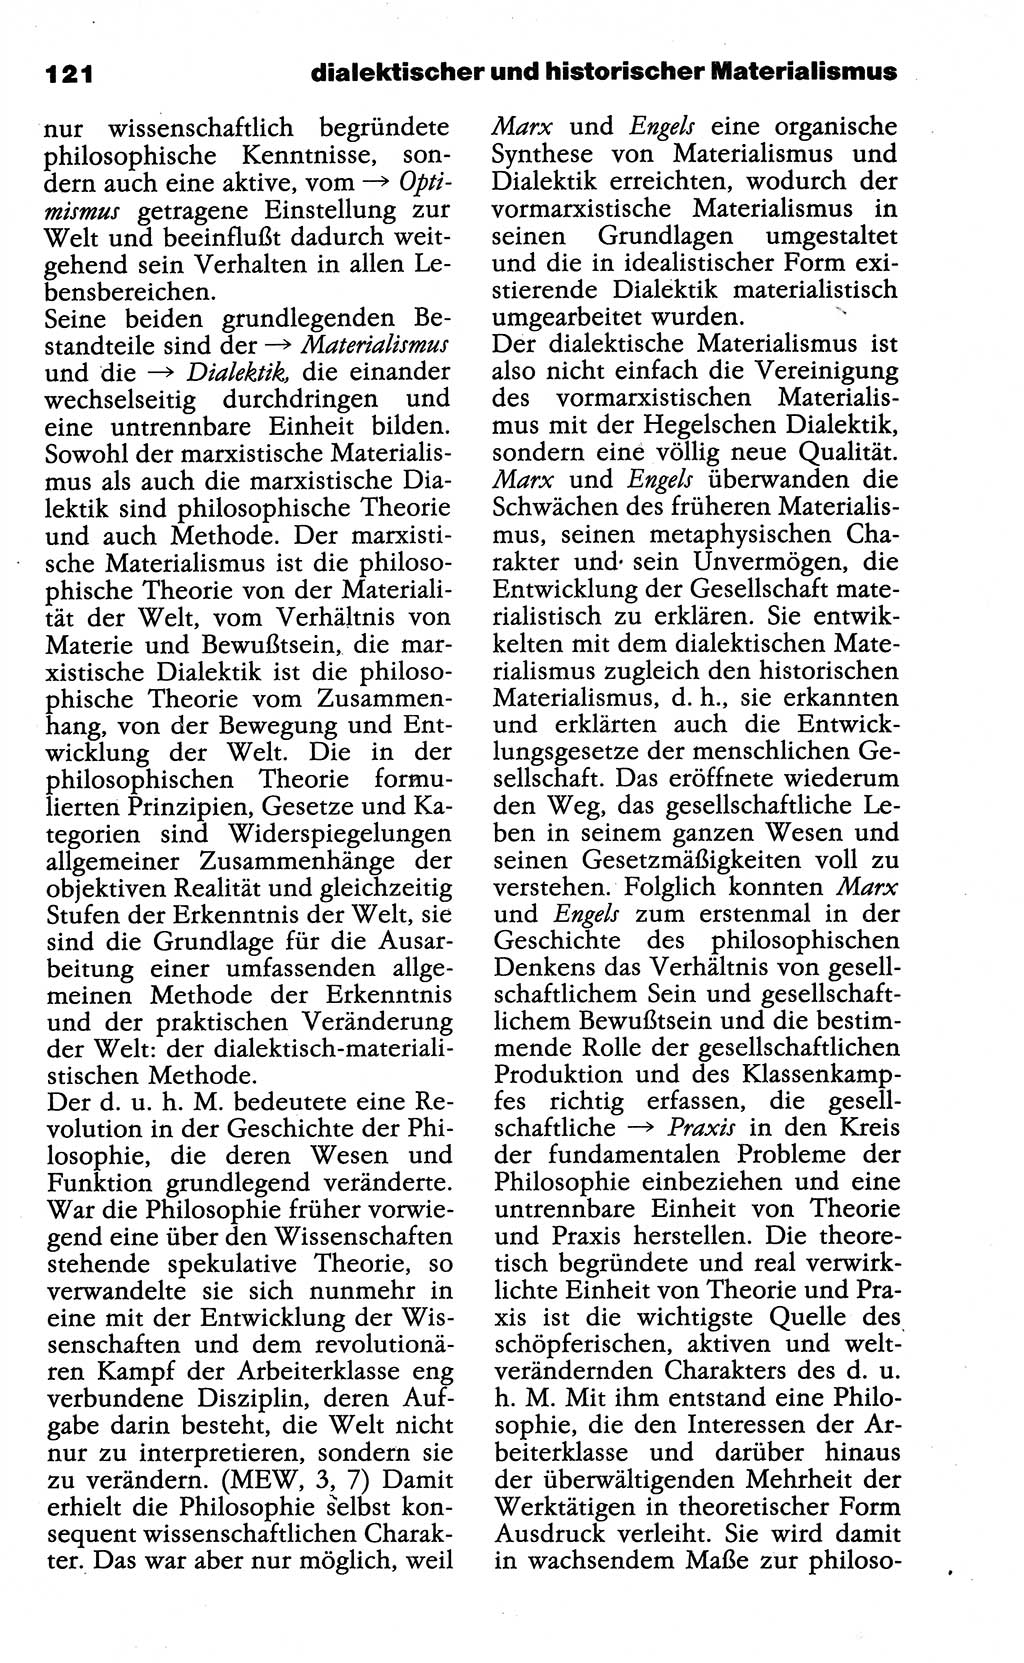 Wörterbuch der marxistisch-leninistischen Philosophie [Deutsche Demokratische Republik (DDR)] 1985, Seite 121 (Wb. ML Phil. DDR 1985, S. 121)